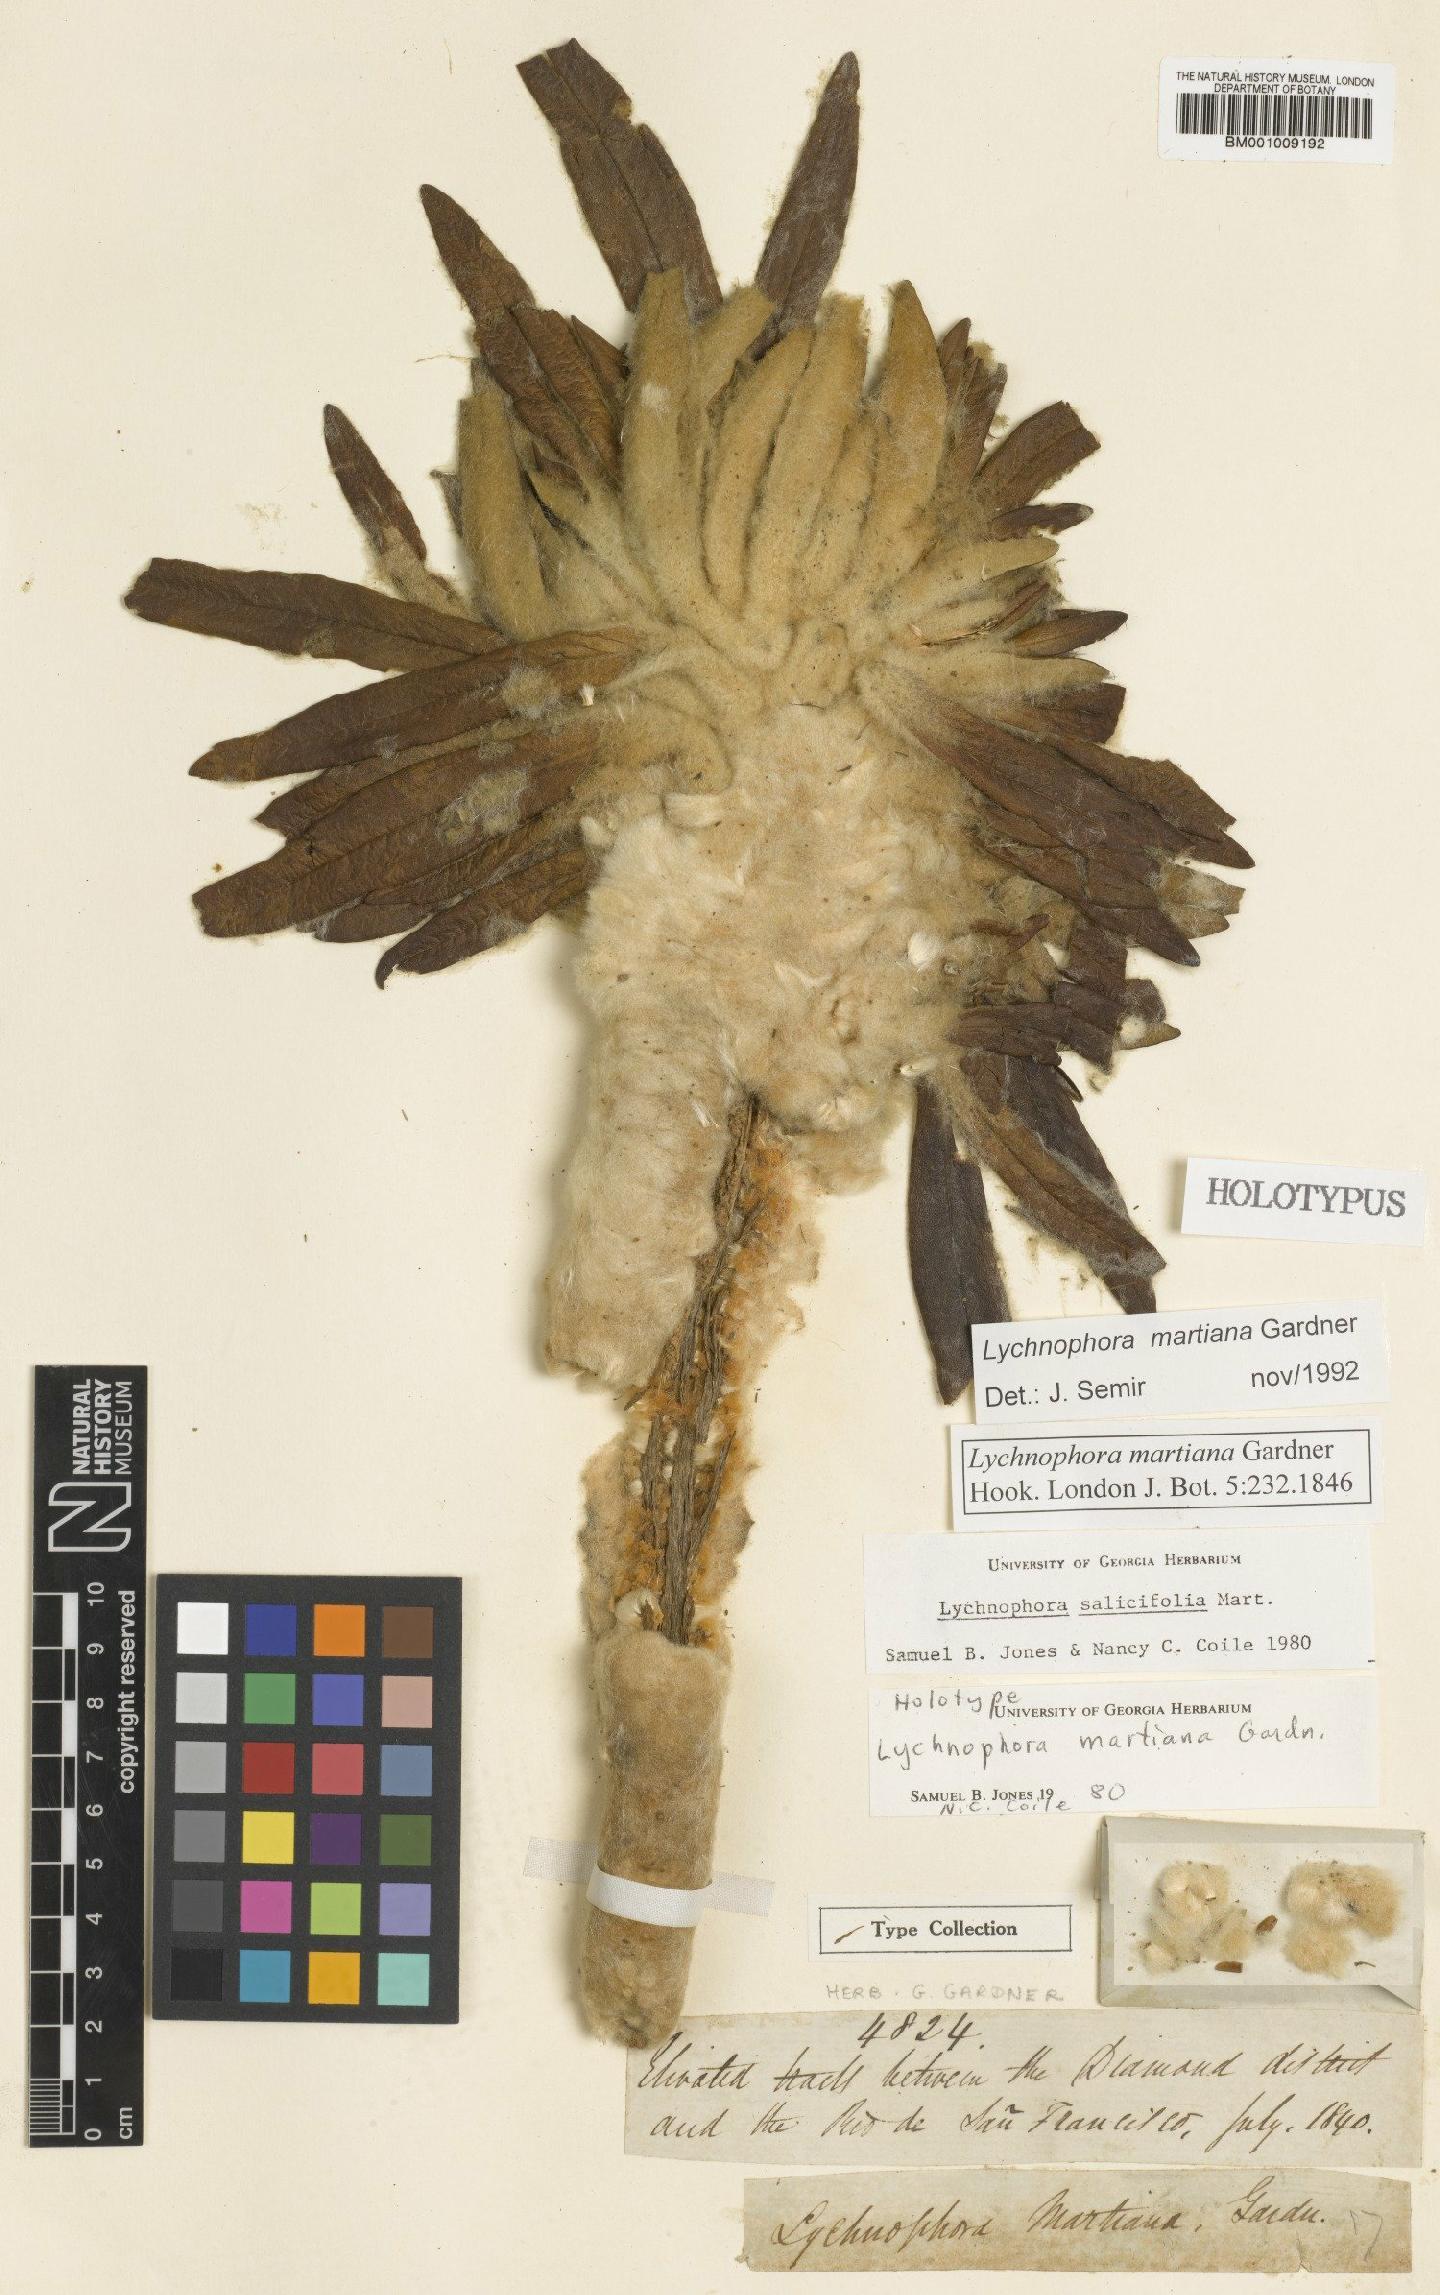 To NHMUK collection (Lychnophora martiana Gardner; Holotype; NHMUK:ecatalogue:557219)